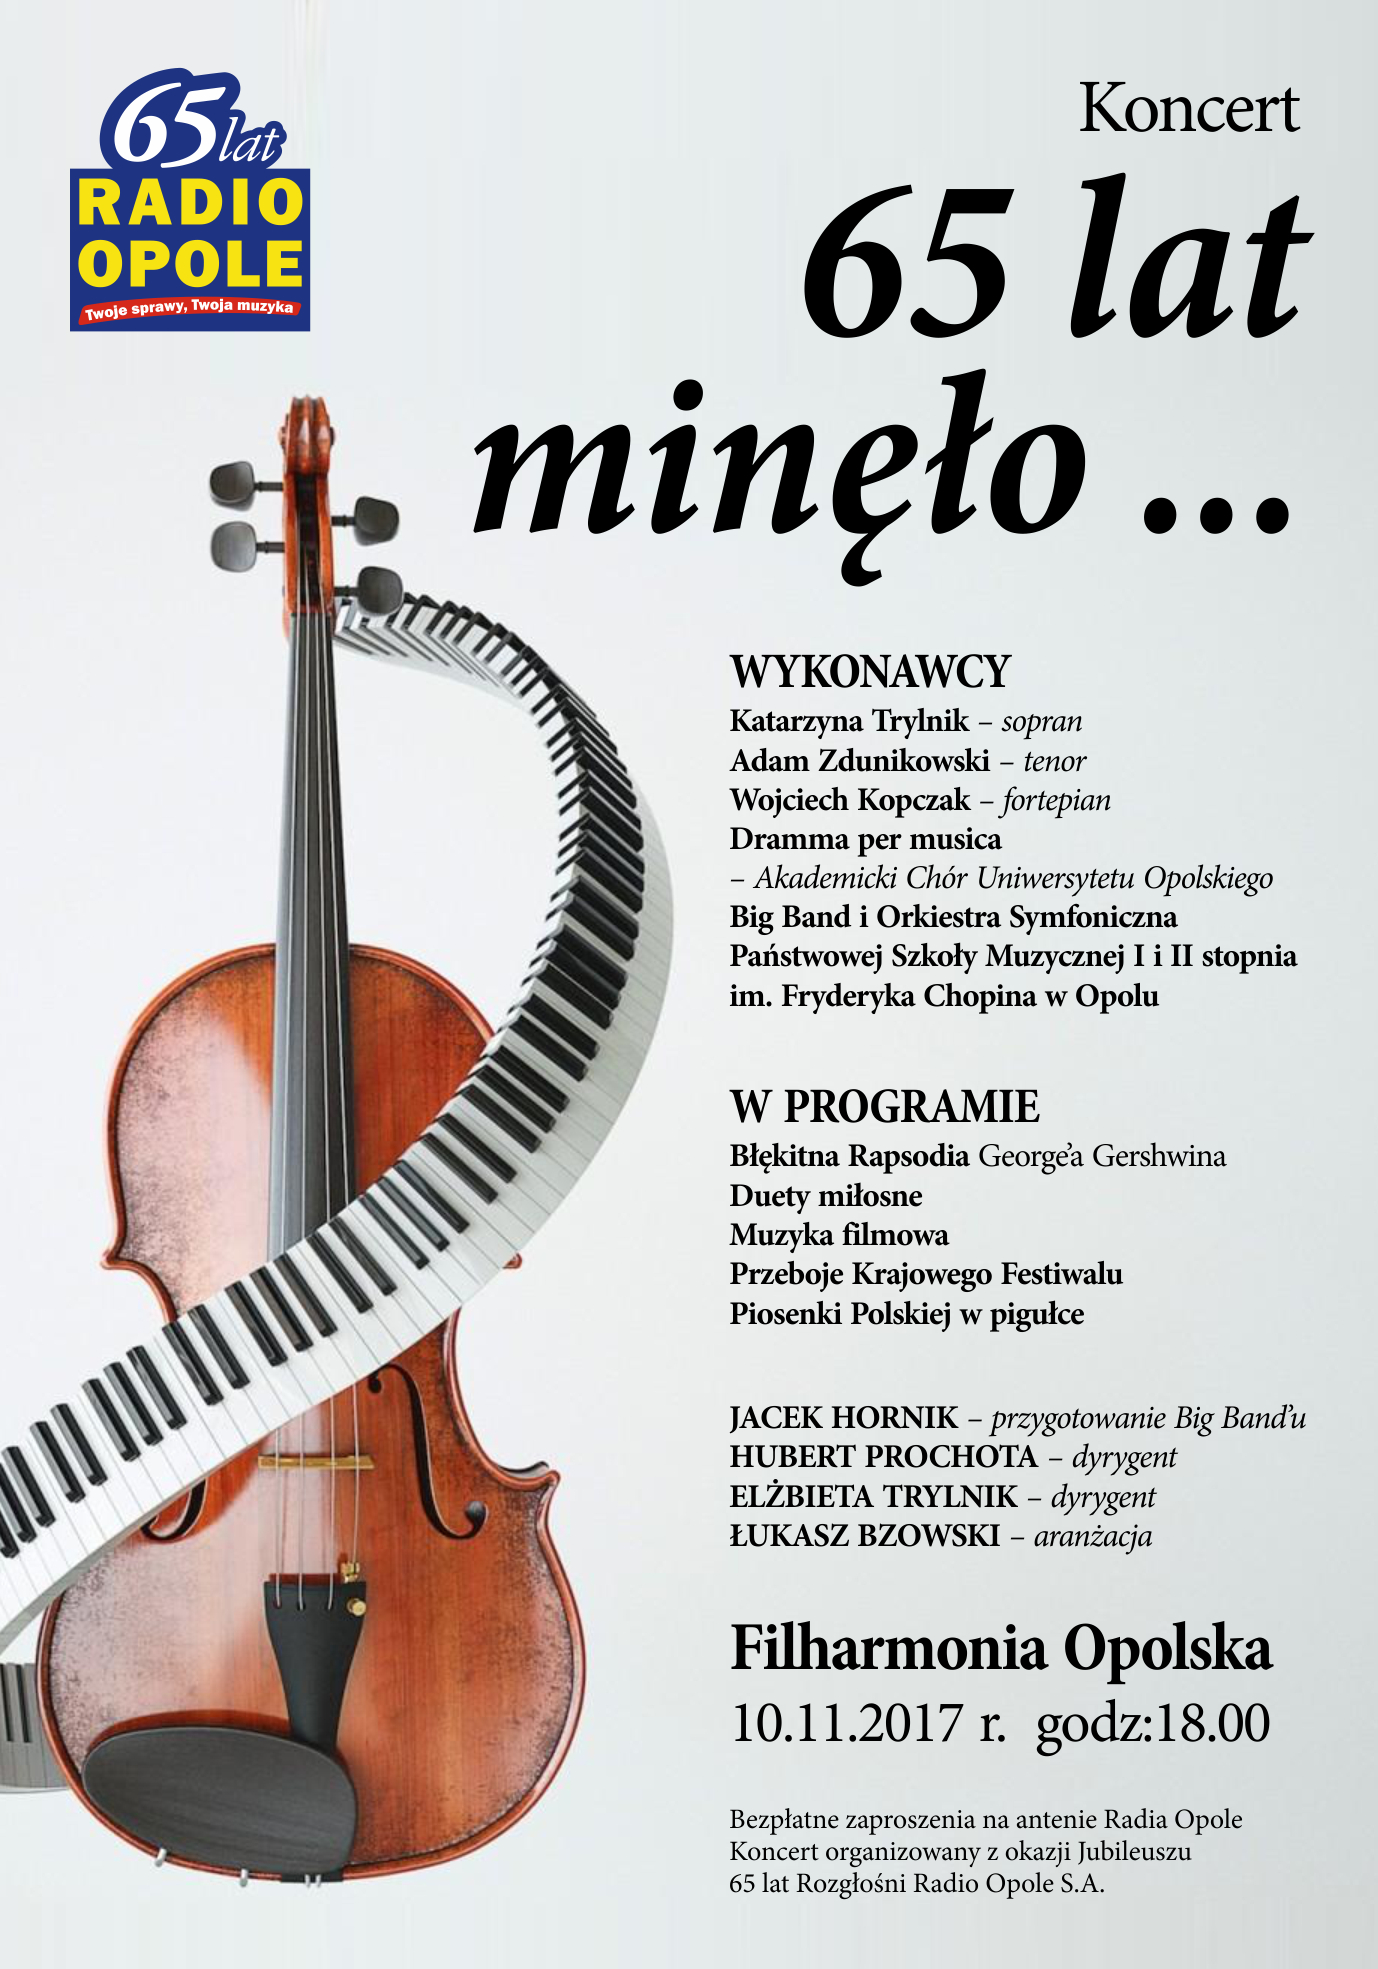 65 lat minęło… - wyjątkowy koncert w Filharmonii Opolskiej odbędzie się 10 listopada